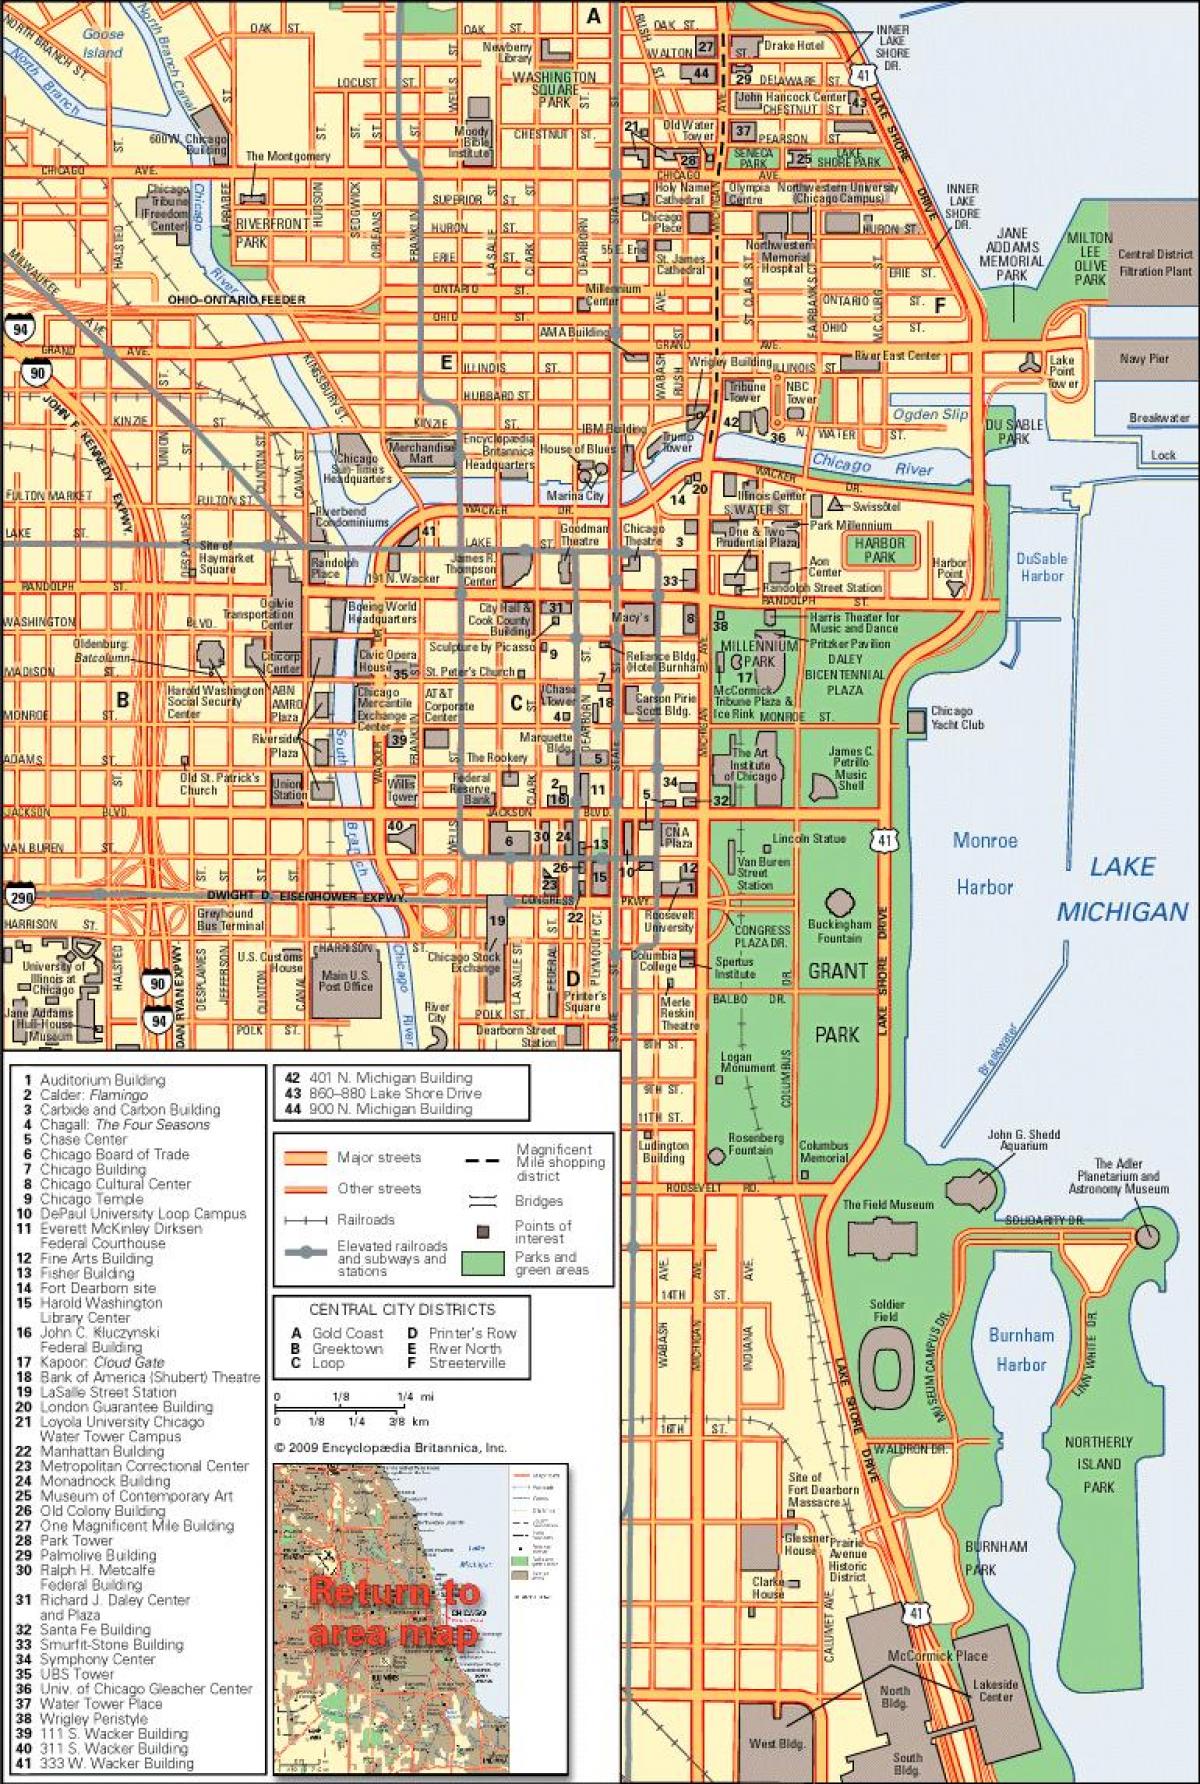 Чикаго мапата во центарот на градот